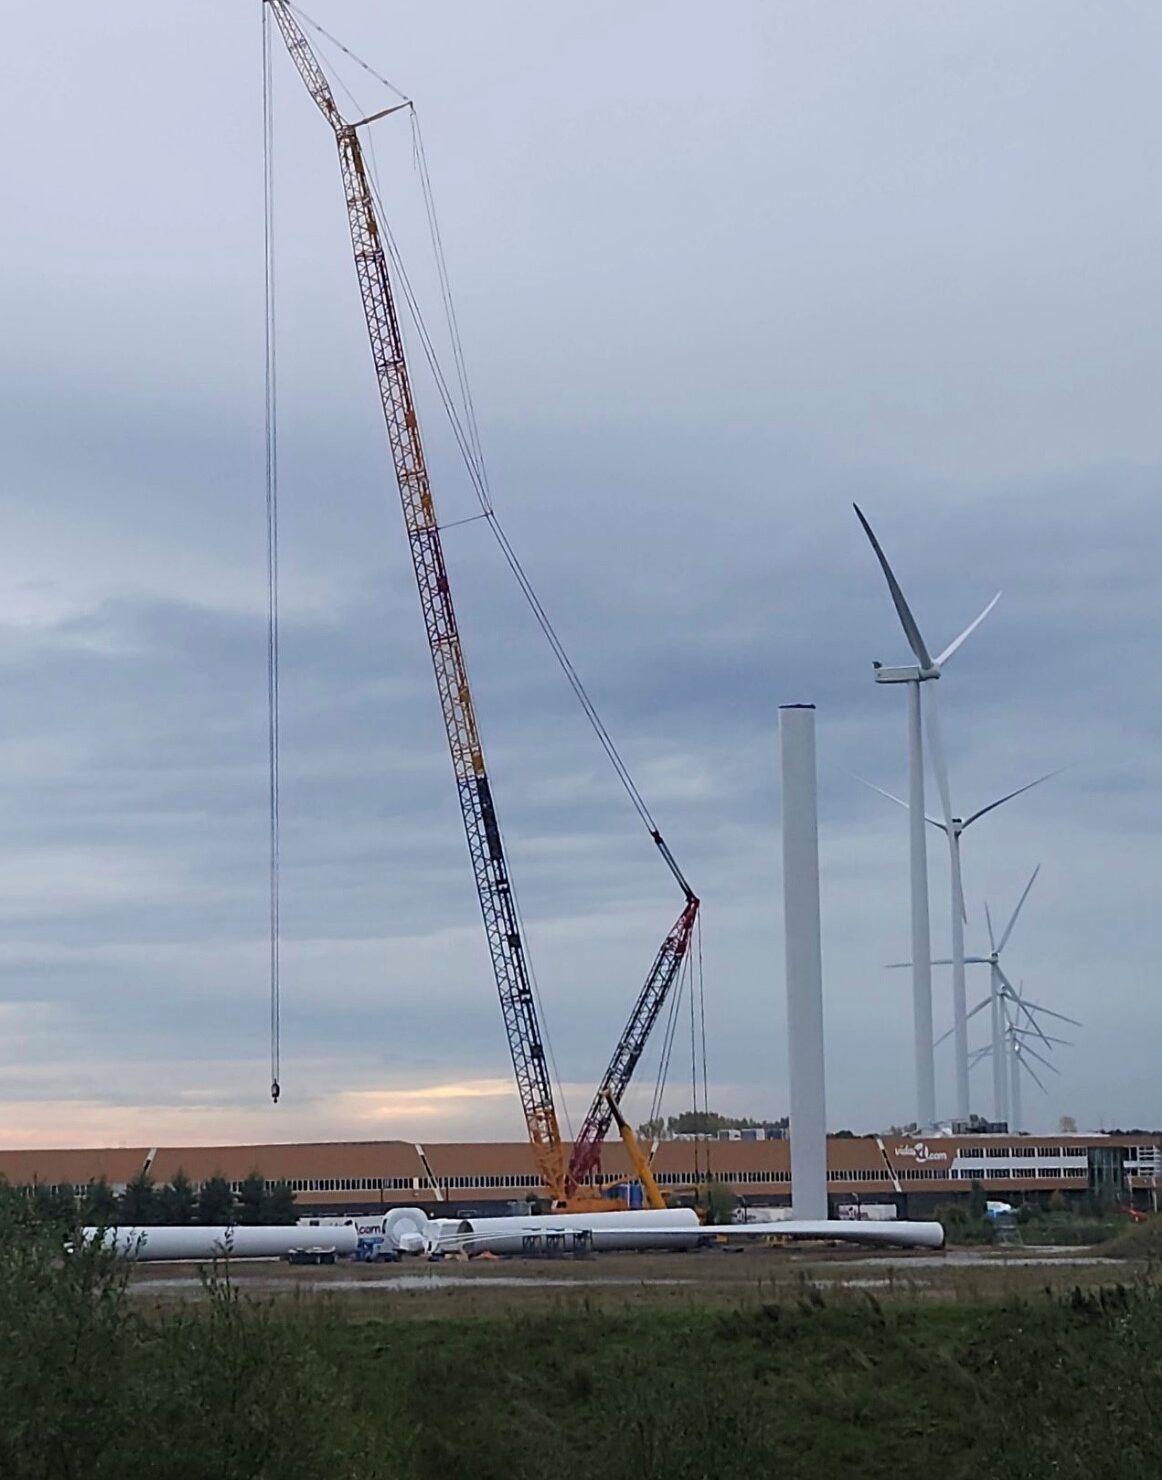 H4A Windenergie maakt een fundering voor een windmolen bij Windpark Greenport Venlo in Nederland